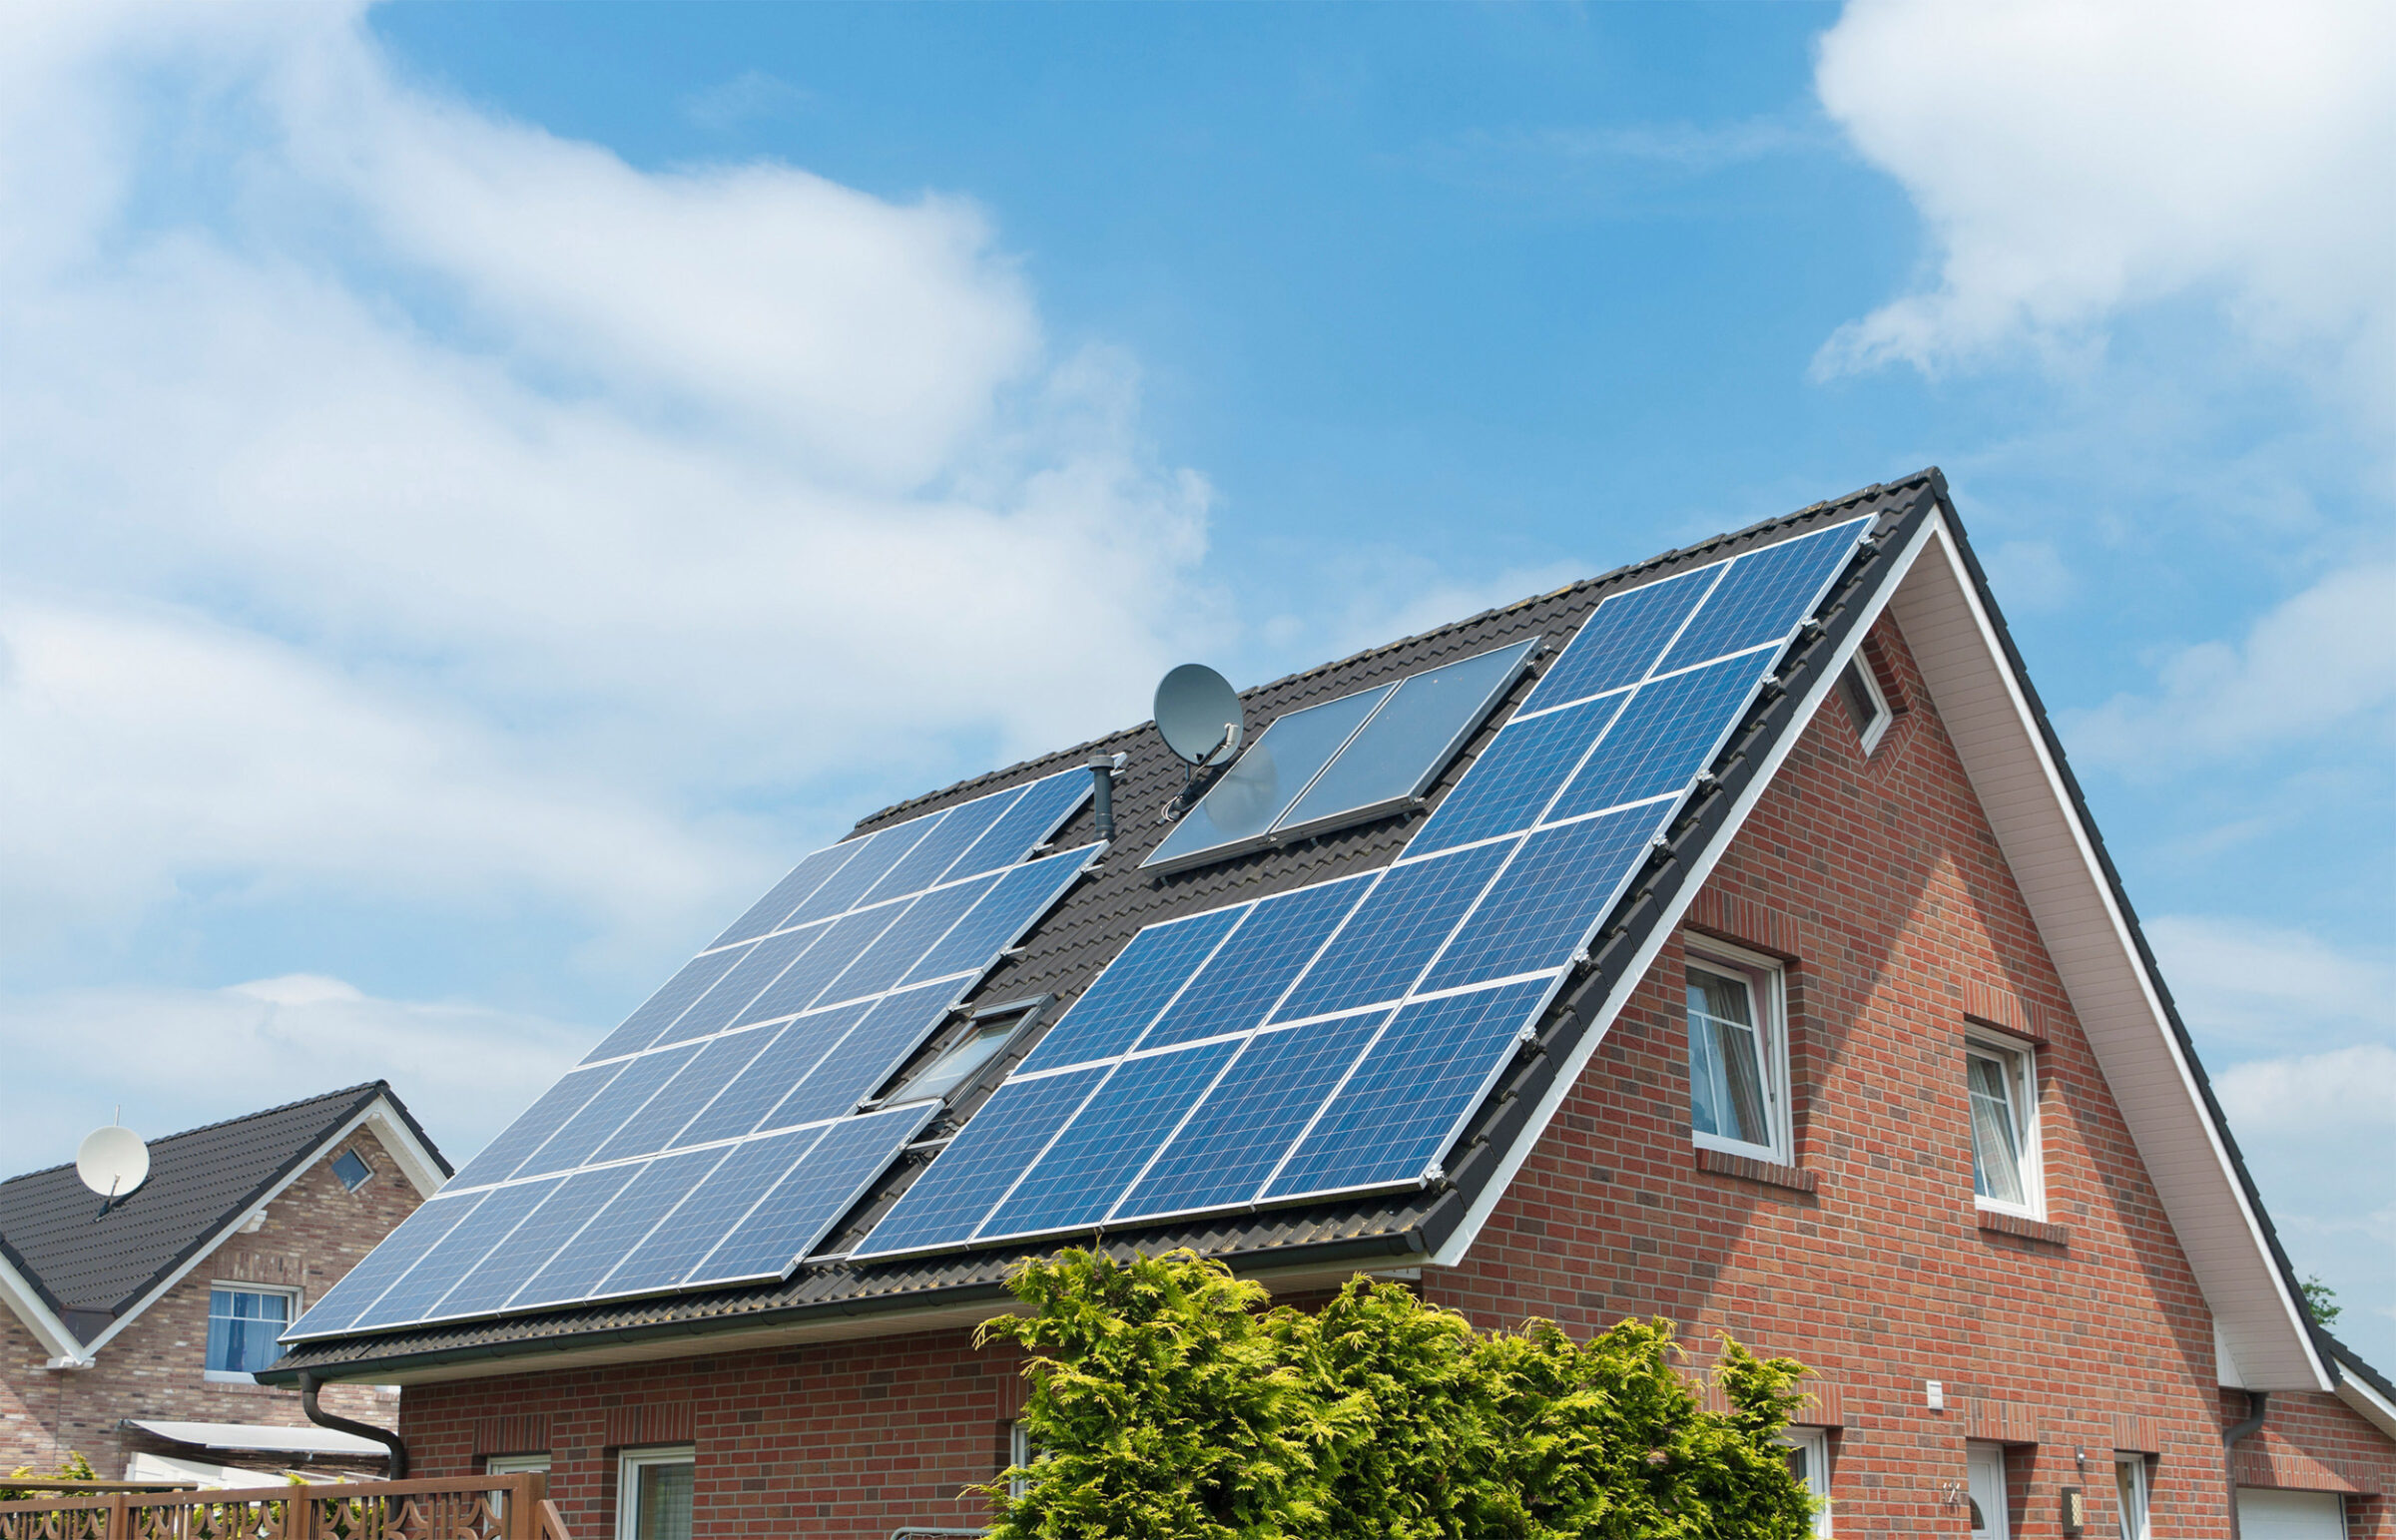 Solarpflicht: Einfamilienhaus mit Solarpaneelen auf dem Dach vor blauem Himmel.